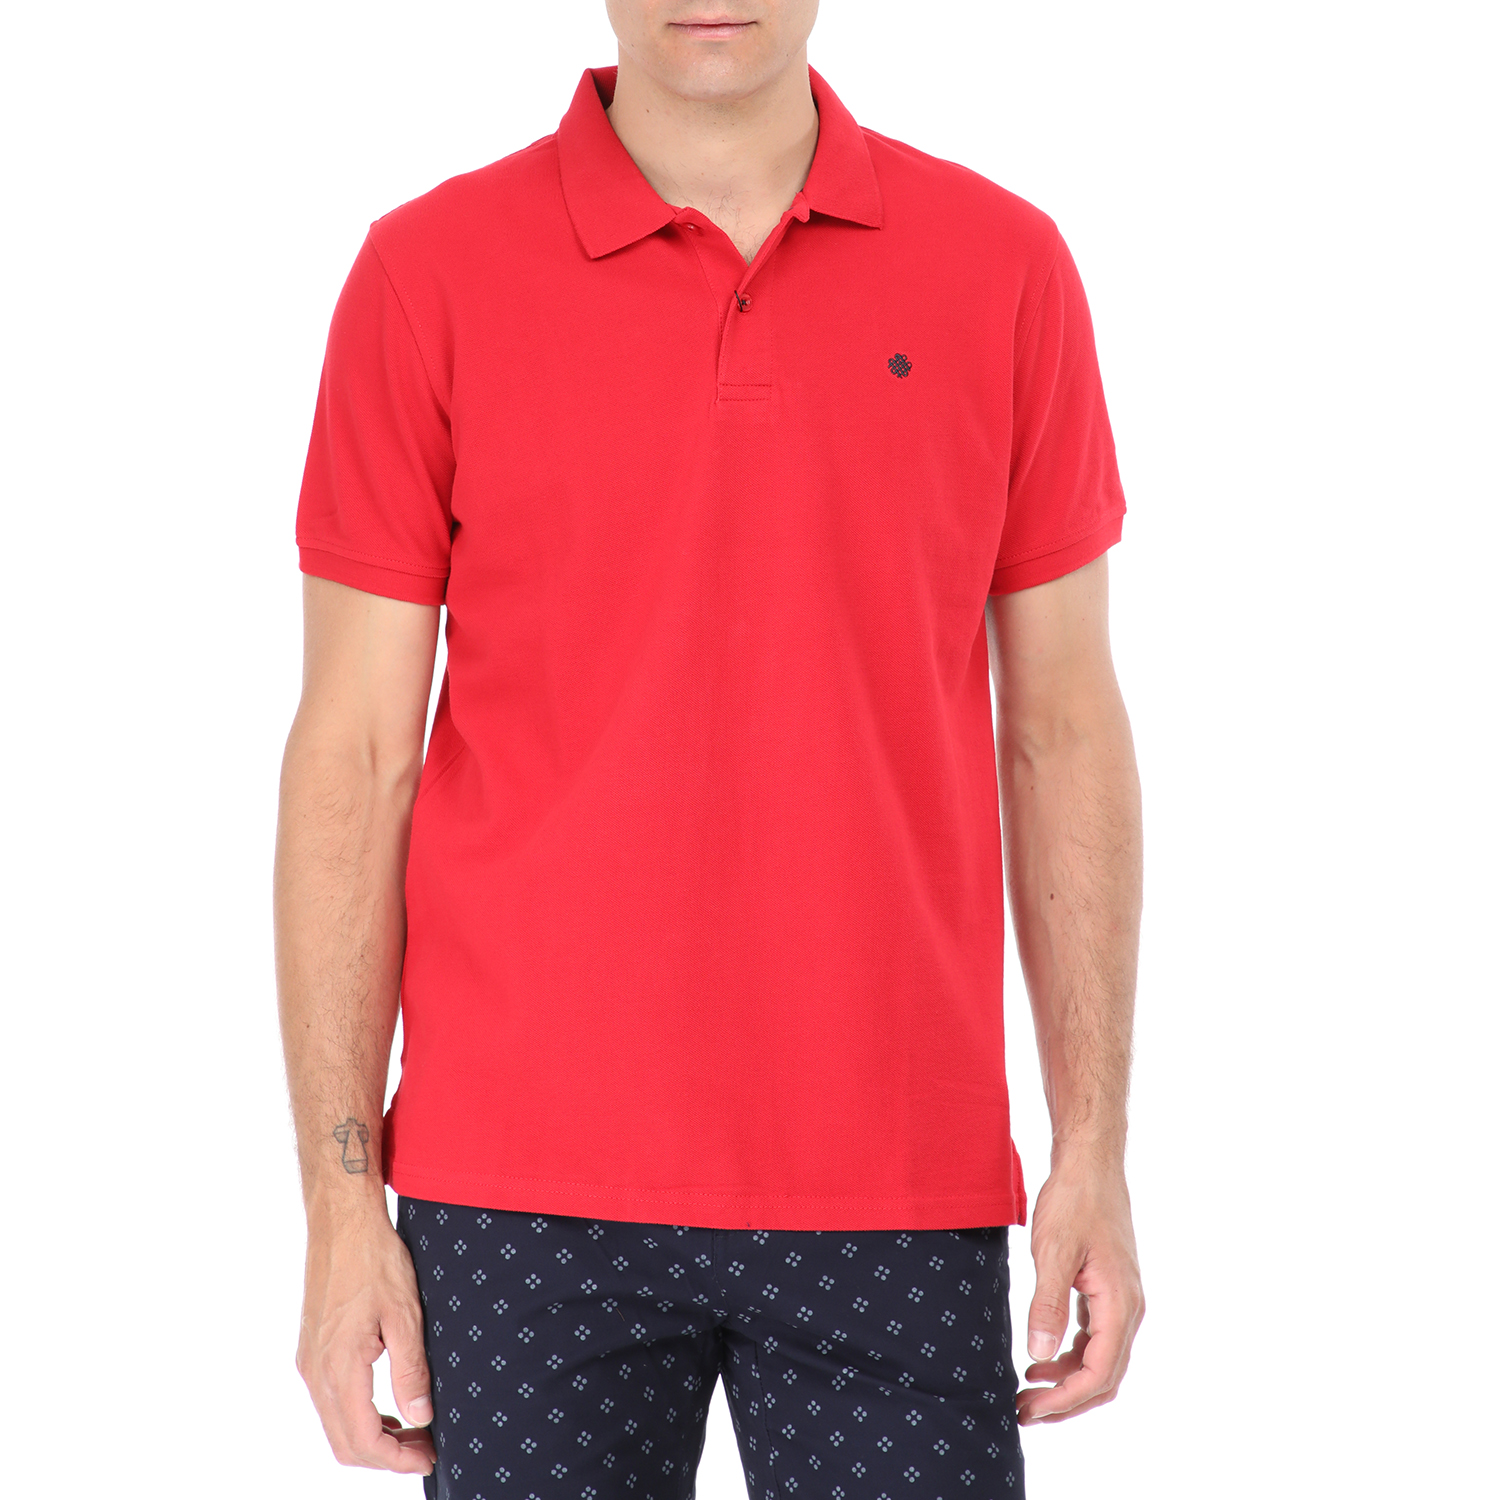 Ανδρικά/Ρούχα/Μπλούζες/Πόλο DORS - Ανδρική polo μπλούζα DORS κόκκινη